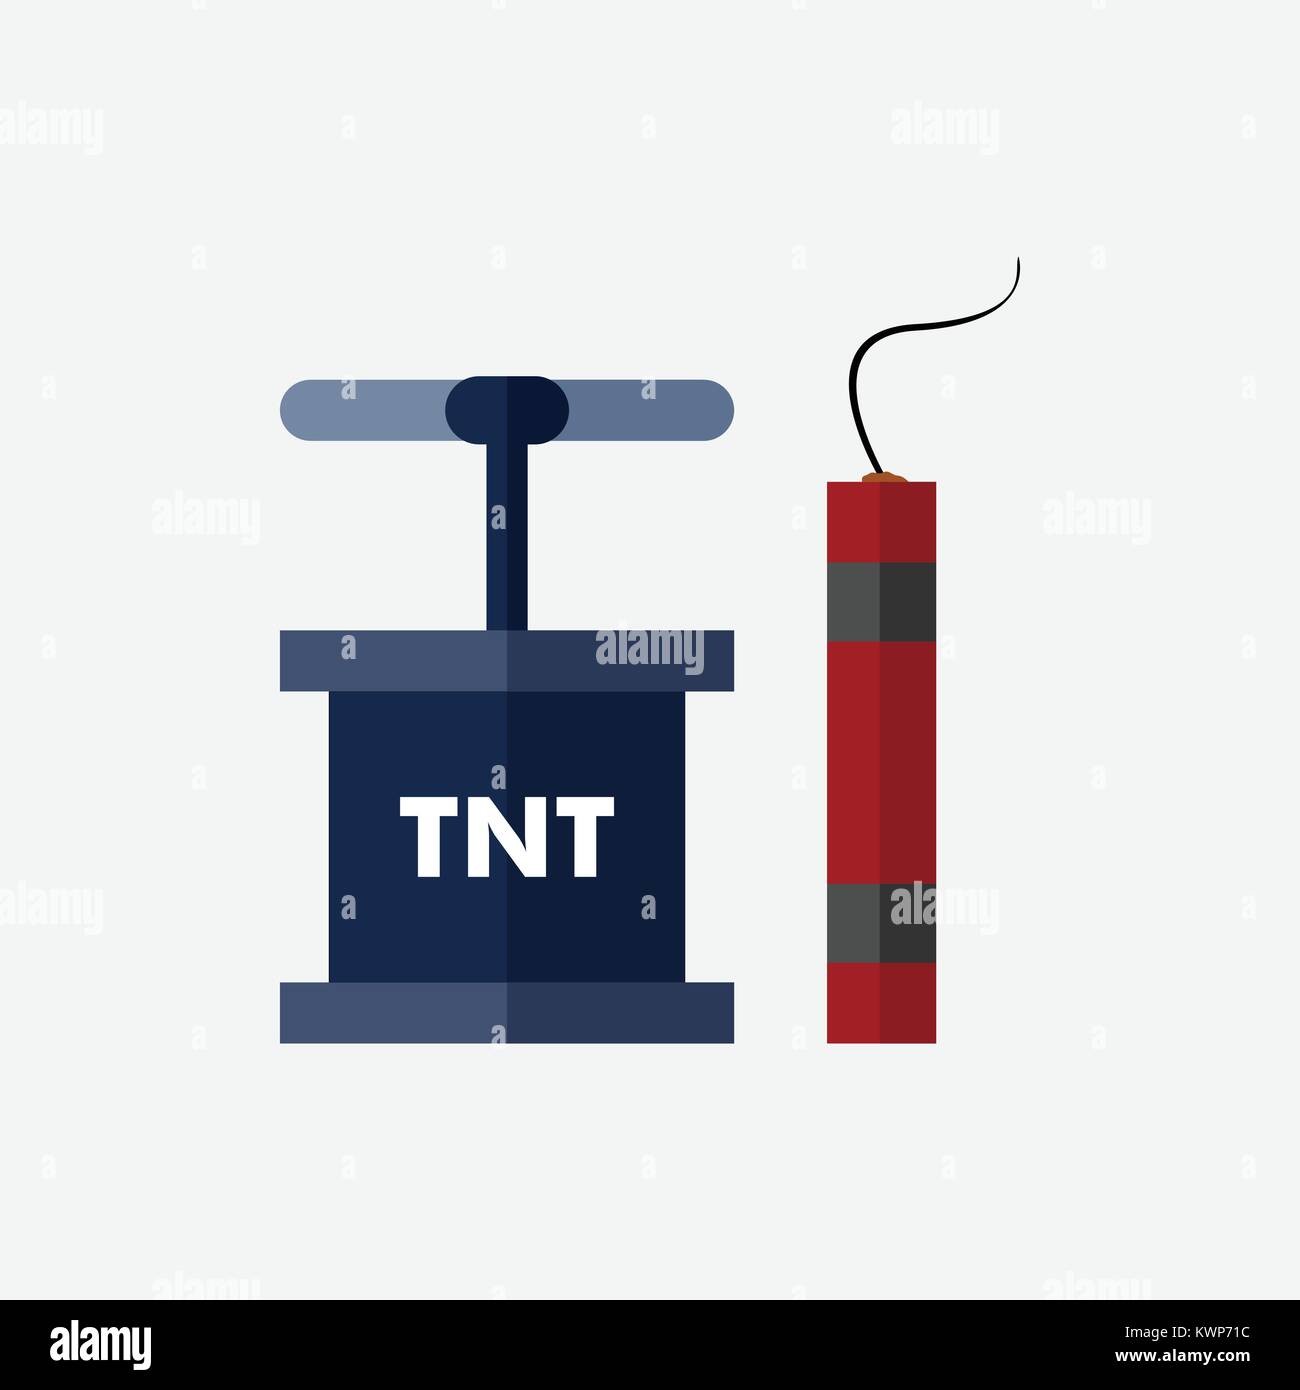 Demolizione di TNT Dynamite Mining illustrazione vettoriale Graphic Design Illustrazione Vettoriale